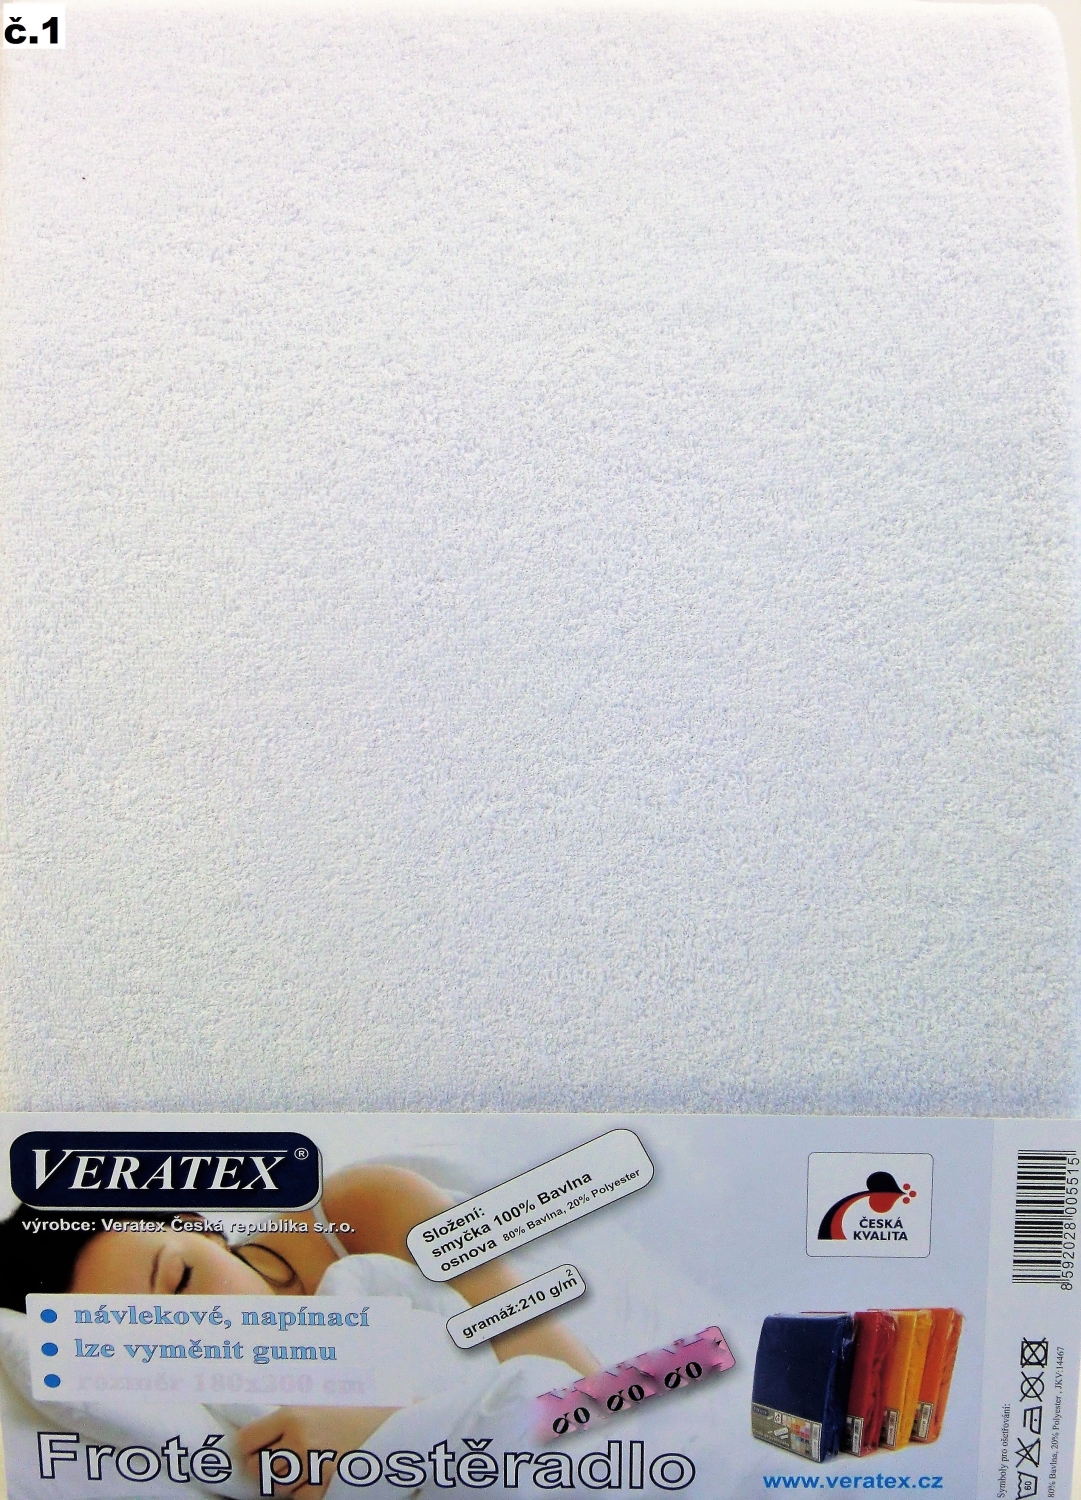 Veratex Froté prostěradlo 200 x 240 cm (č. 1-bílá) 200 x 240 cm